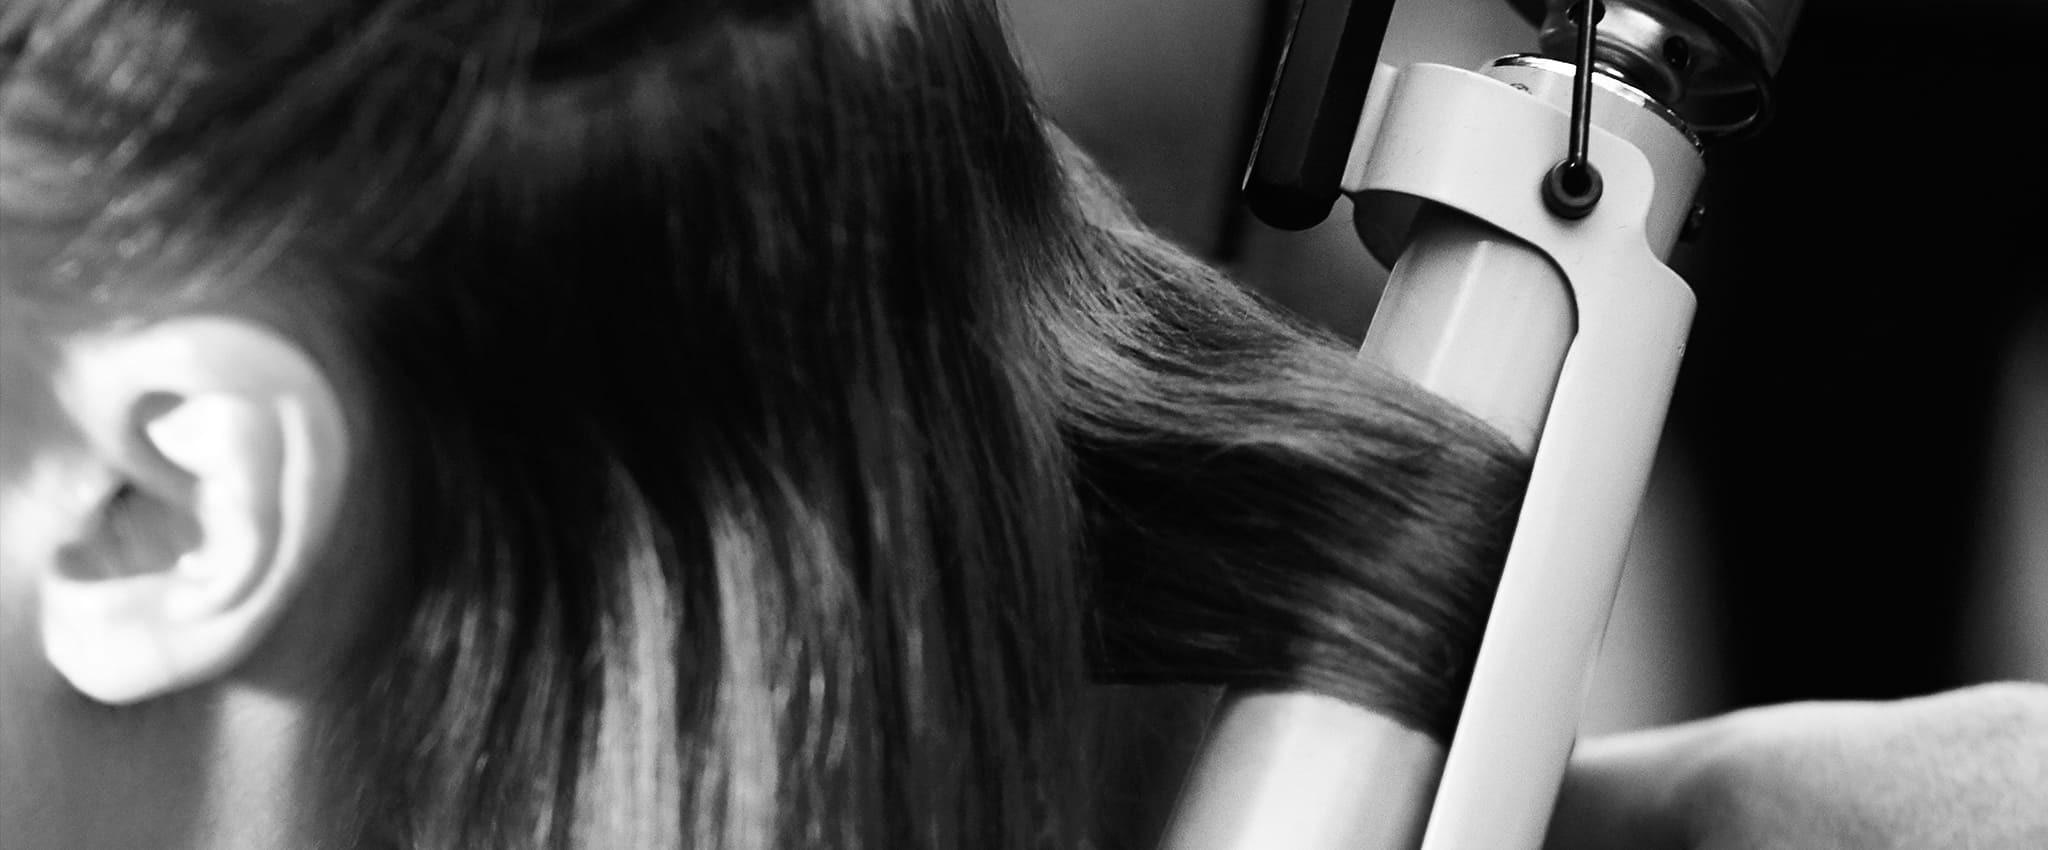 Primer plano de una modelo a quien están peinando una sección de su cabello rizado con moldeador.